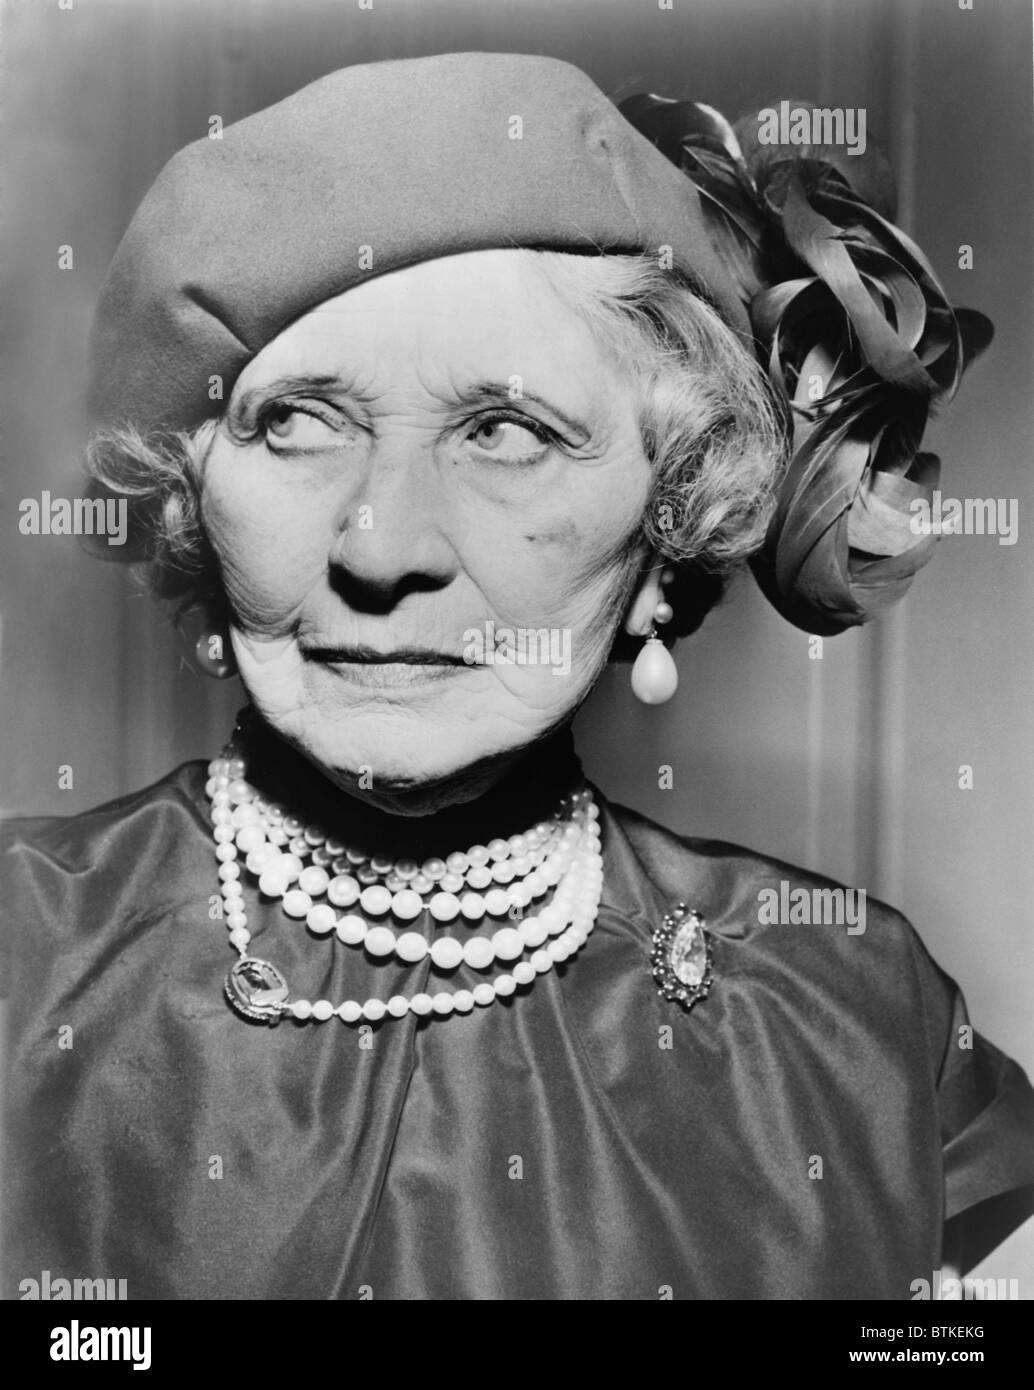 Mary Garden (1874-1967), à l'âge de 80 ans en 1954. Elle a été le leader américain d'opéra au début du 20ème siècle, et a écrit une autobiographie, MARY GARDEN'S STORY en 1951. Banque D'Images